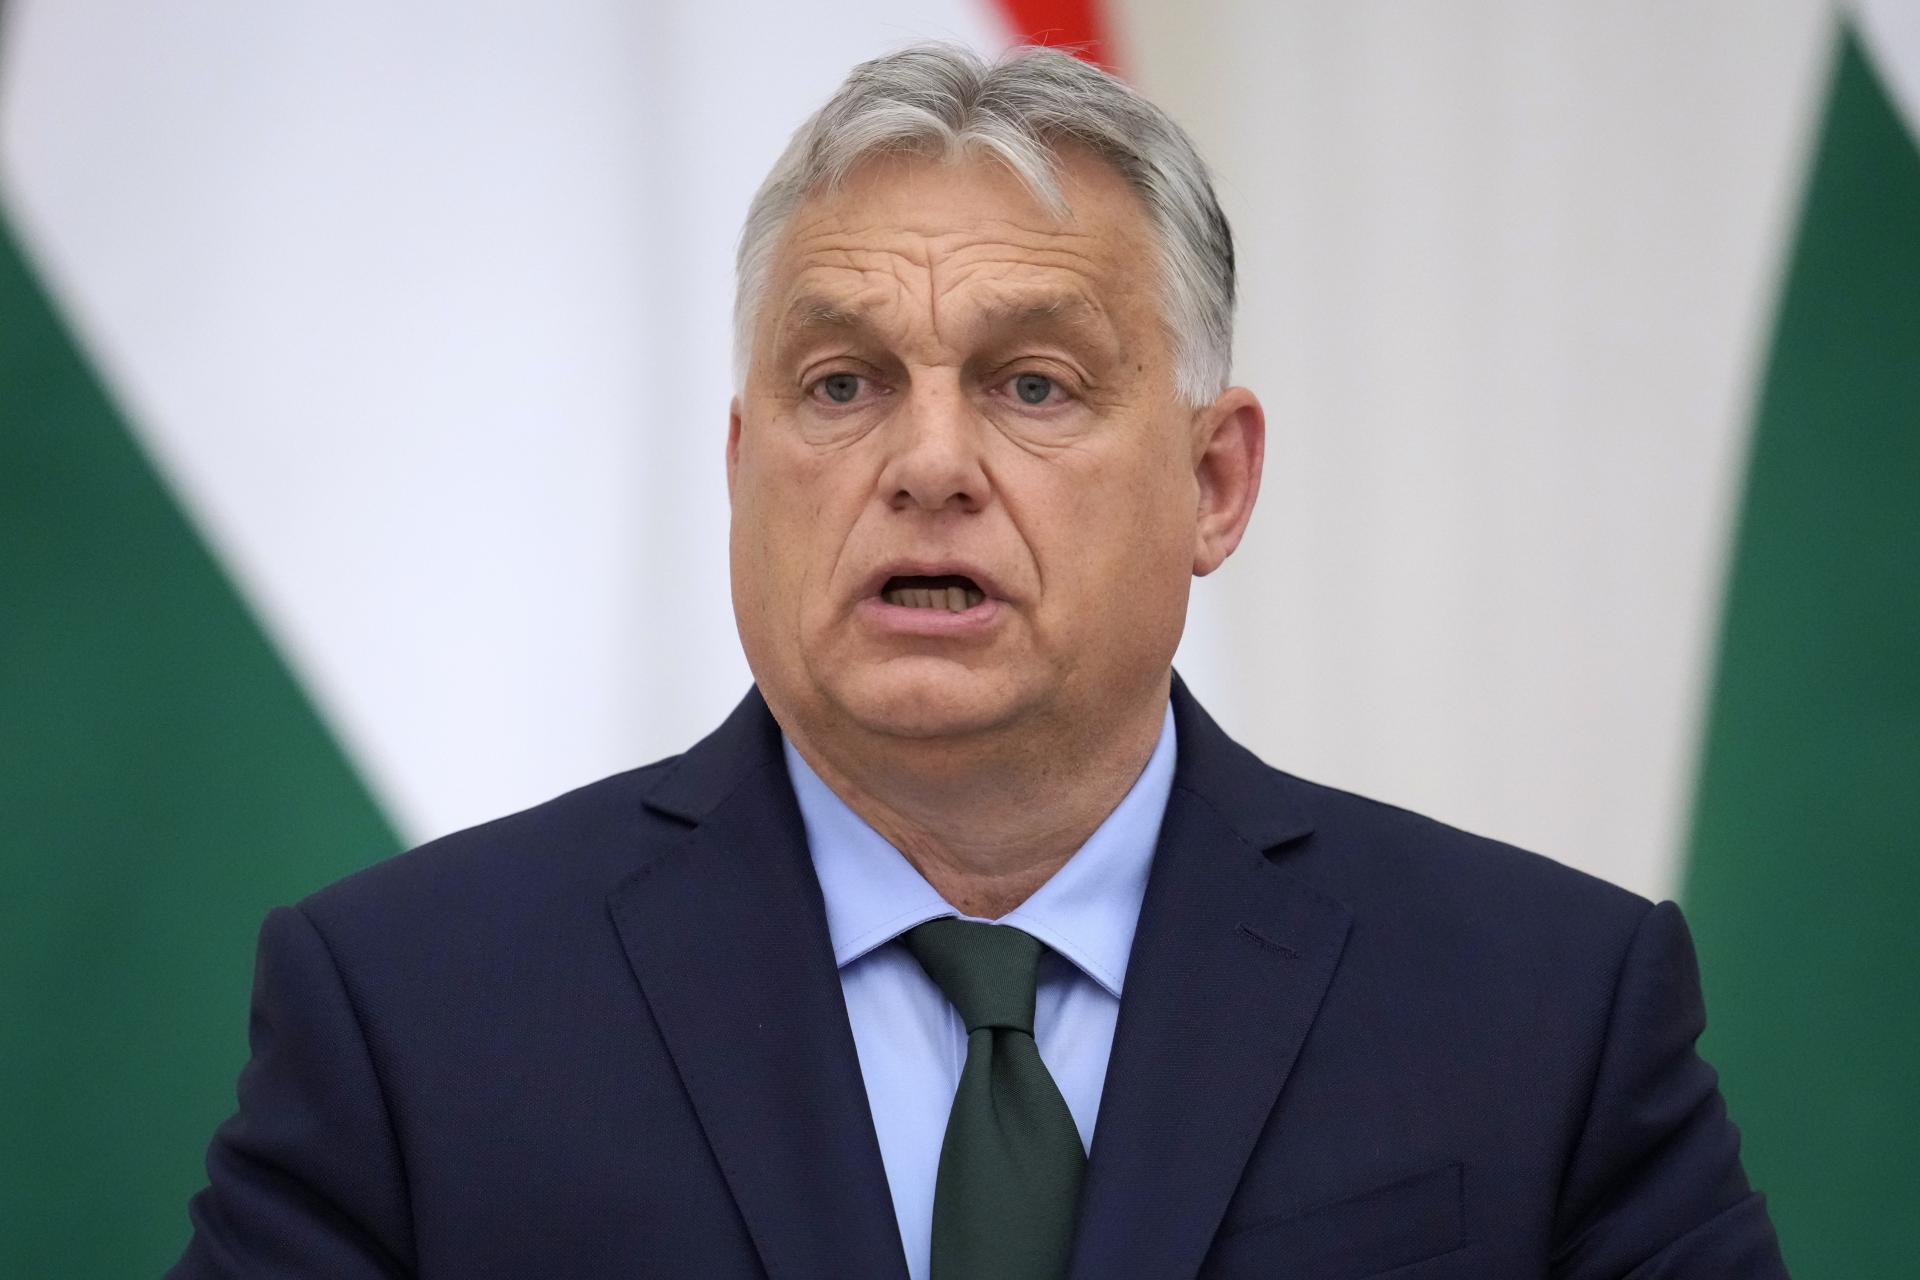 Orbán doplatil na svoje zahraničné výlety. Eurokomisári budú bojkotovať podujatia maďarského predsedníctva